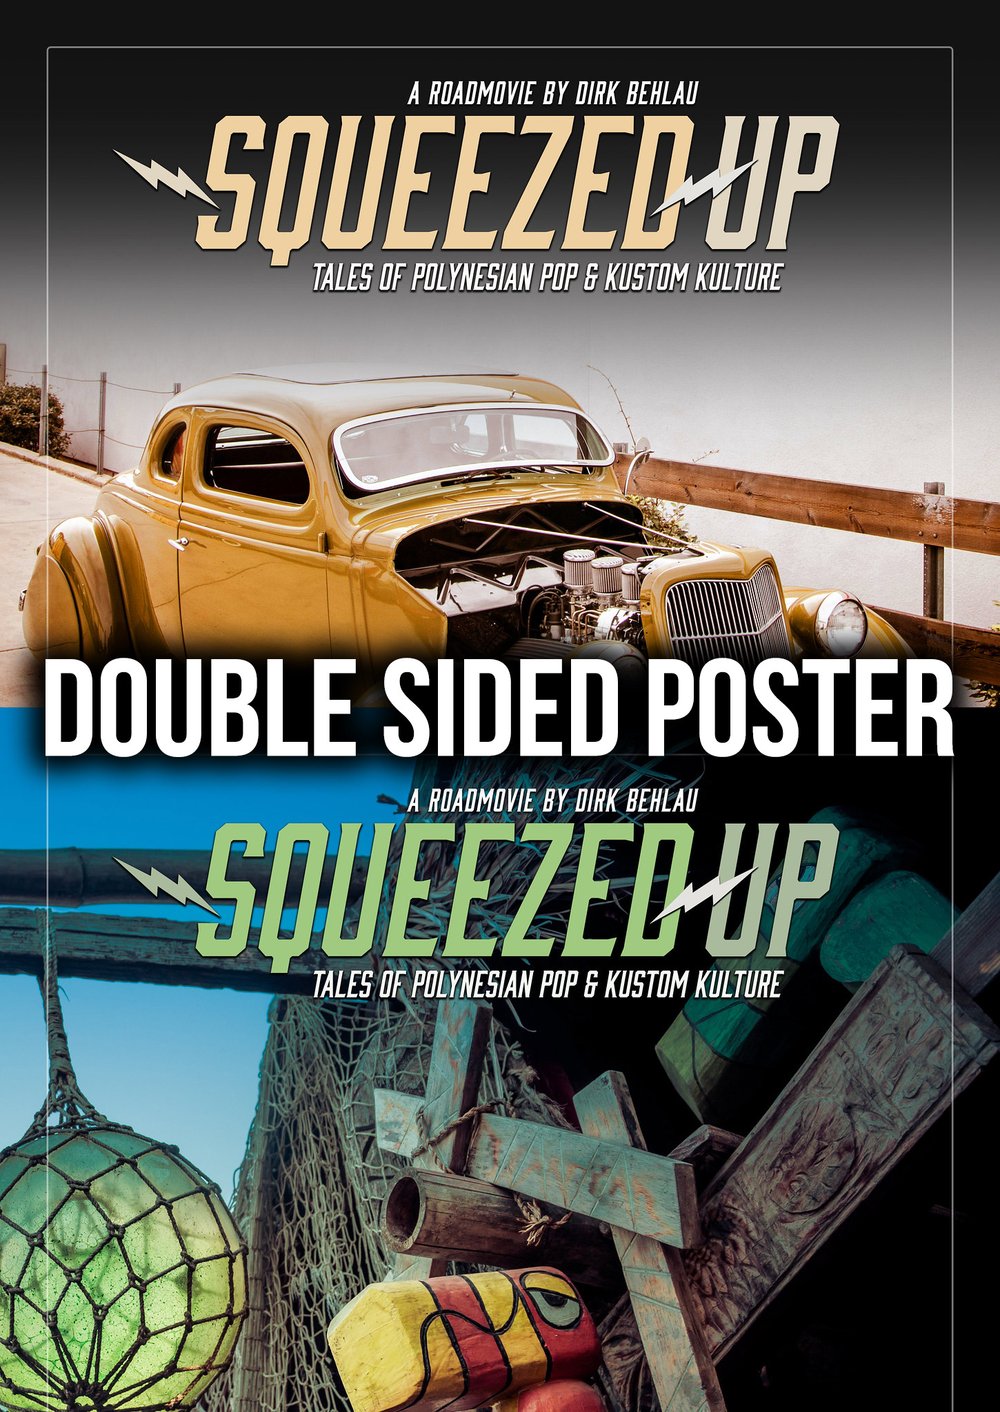 Squeezed-Up Original Movie Poster A2 - No 4